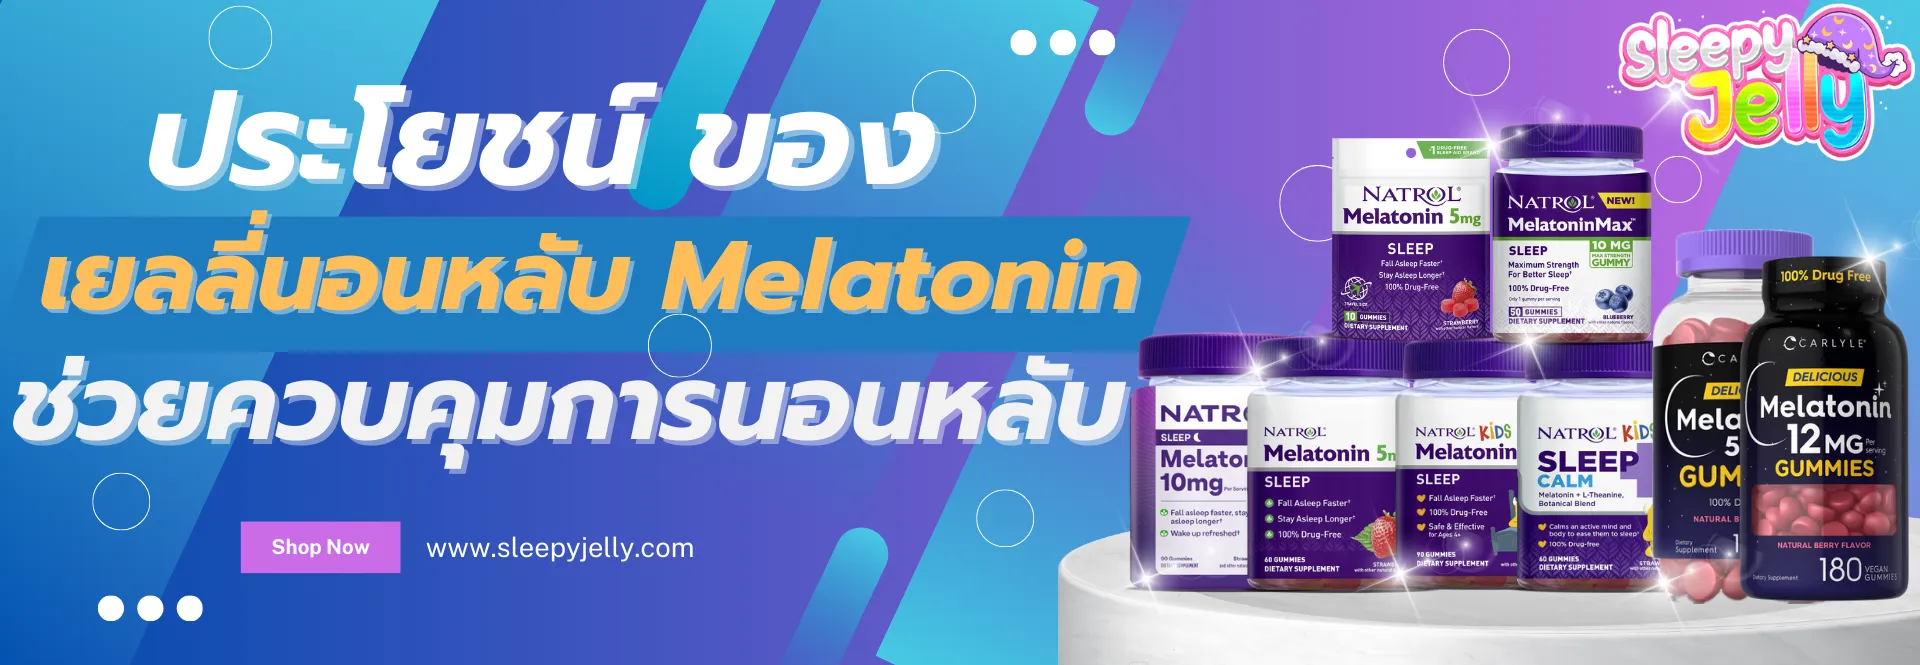 ประโยชน์ของ เยลลี่นอนหลับ Melatonin ช่วยในการควบคุมการนอนหลับ